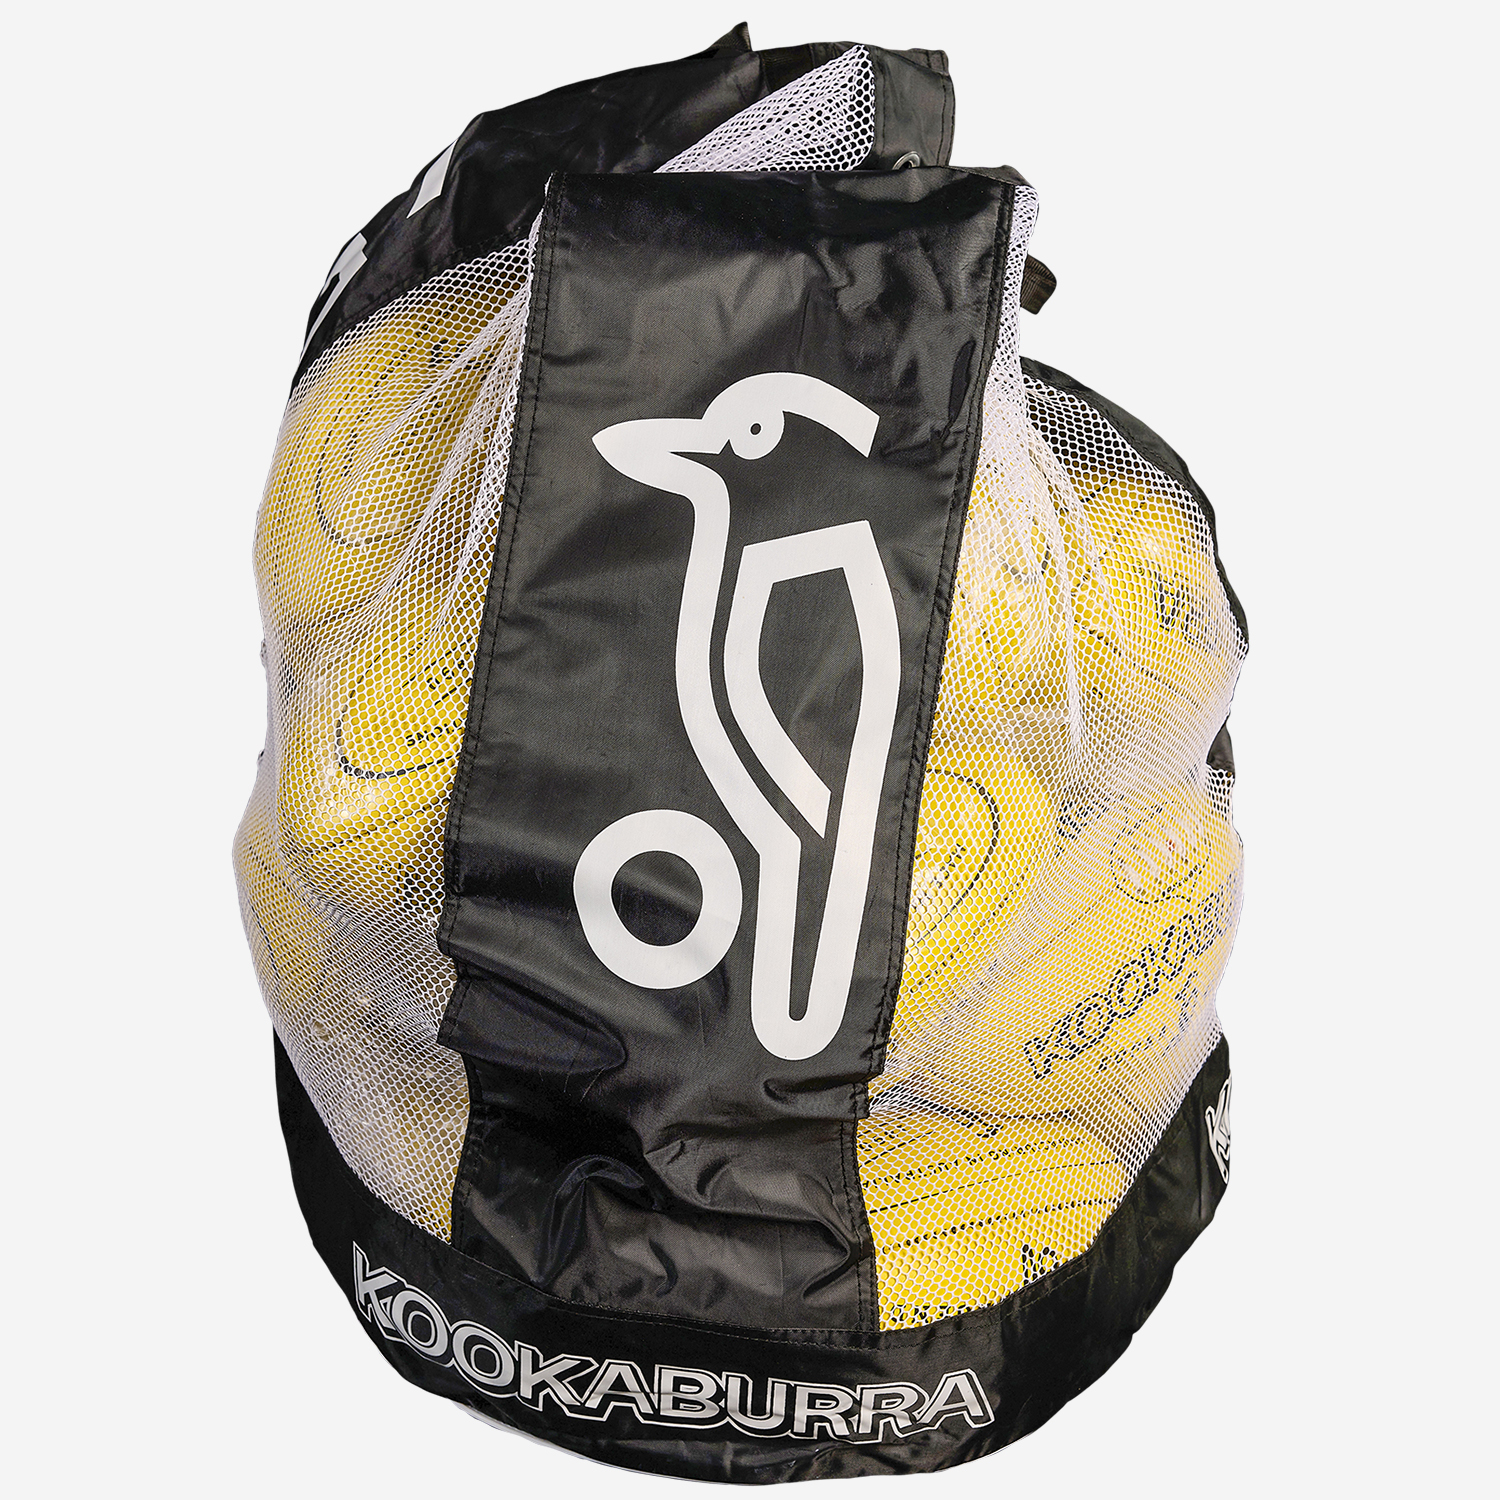 Kookaburra Football Bag